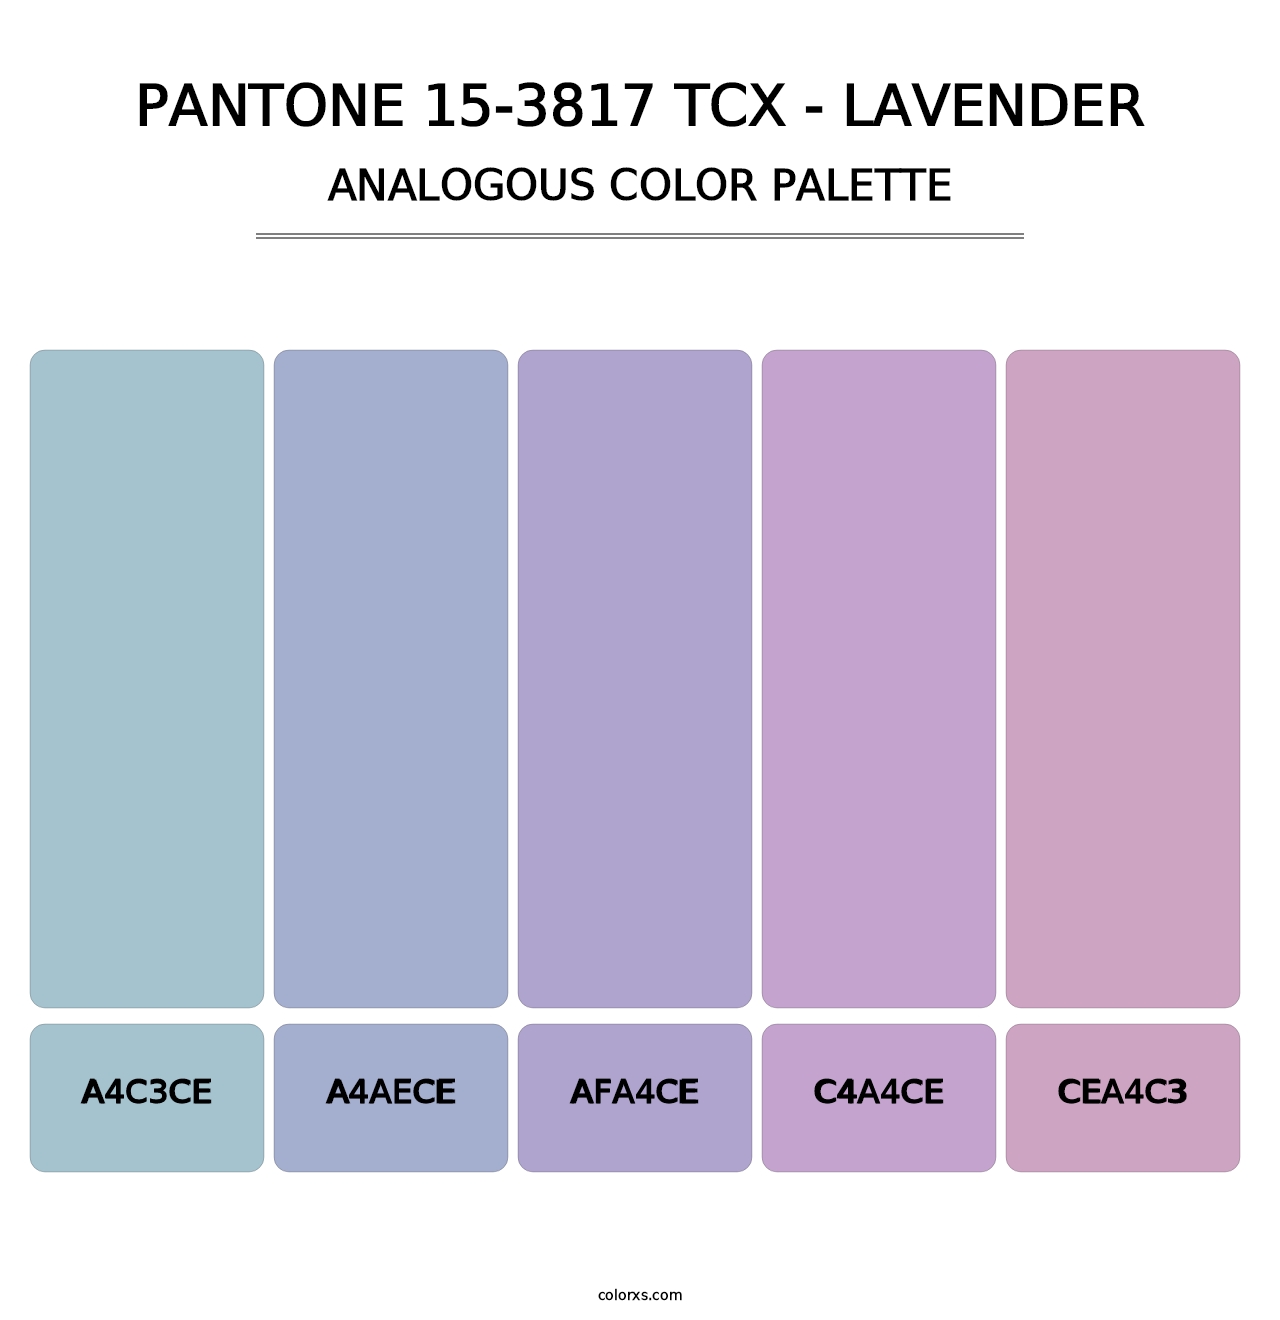 PANTONE 15-3817 TCX - Lavender - Analogous Color Palette